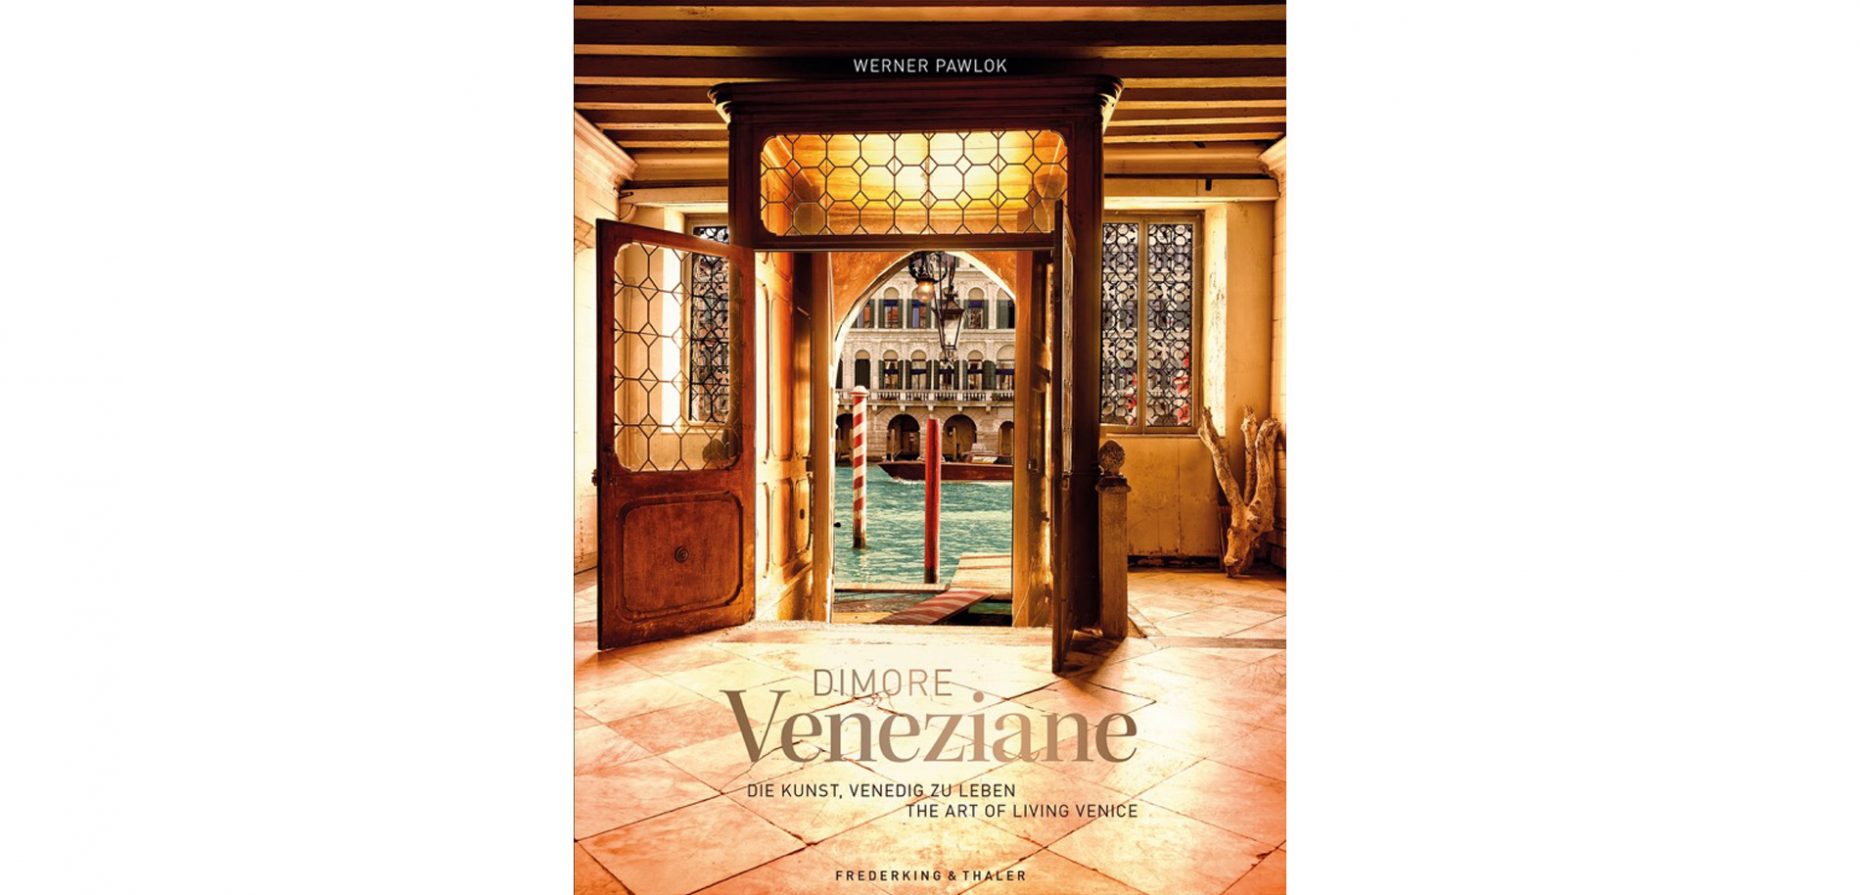 Mit dem Bildband Dimore Veneziane, erschienen bei bei Frederking & Thaler, will der Fotograf Werner Pawlok einen neuen Blick auf die von Overtourism geplagte Lagunenstadt Venedig vermitteln. Wir verraten, ob ihm das gelungen ist.